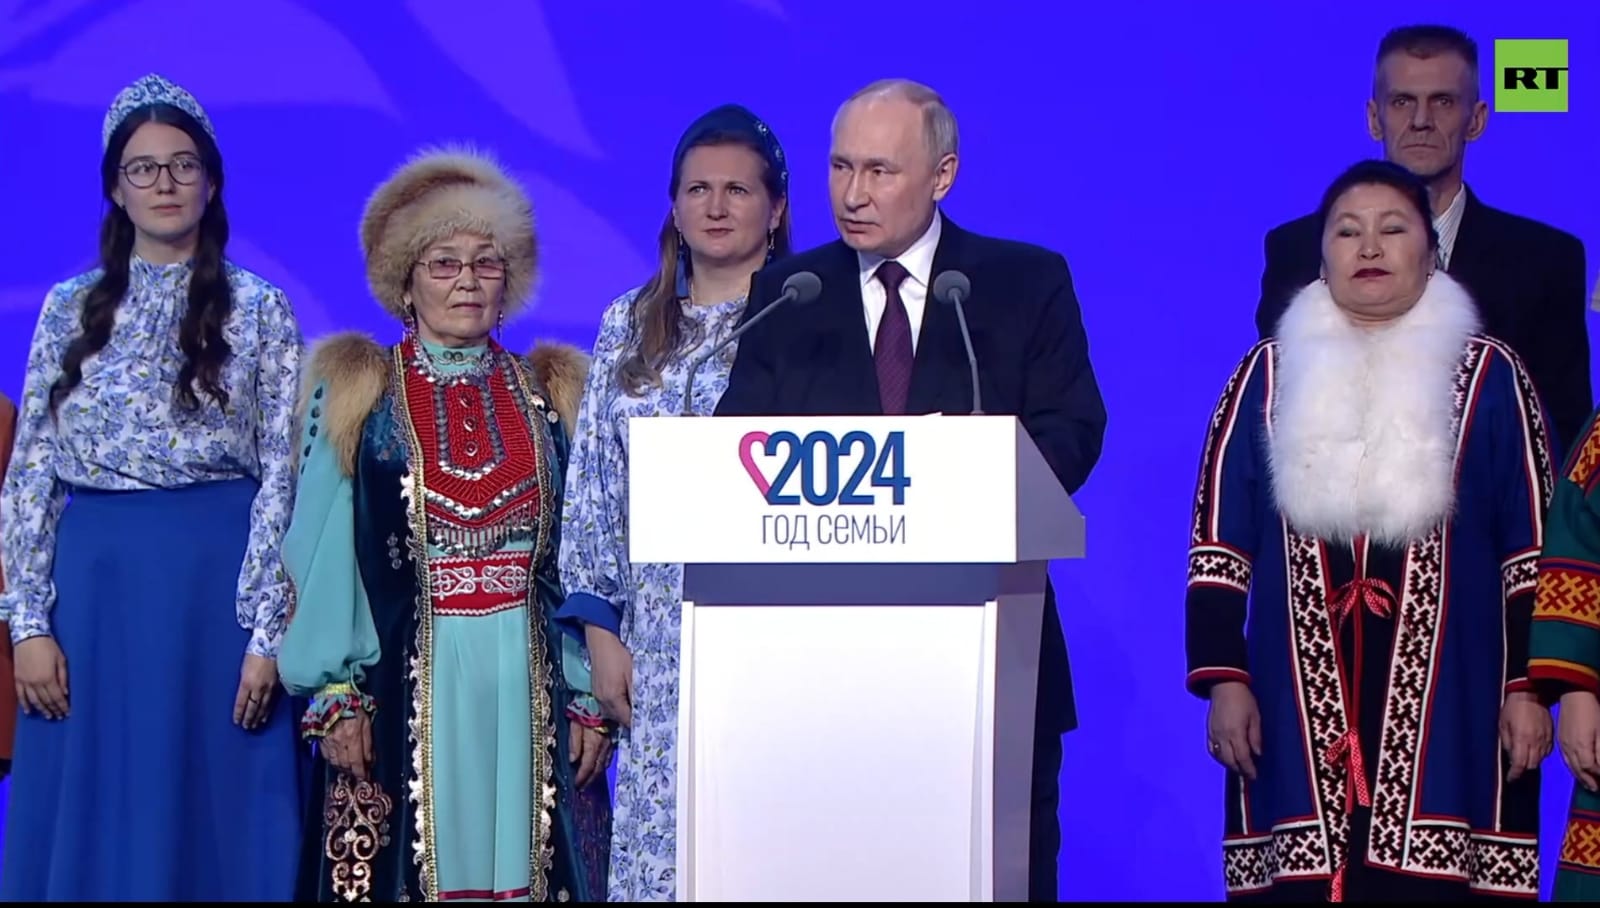 Президент России Владимир Путин тепло отозвался о семье Ахмеровых из Башкирии